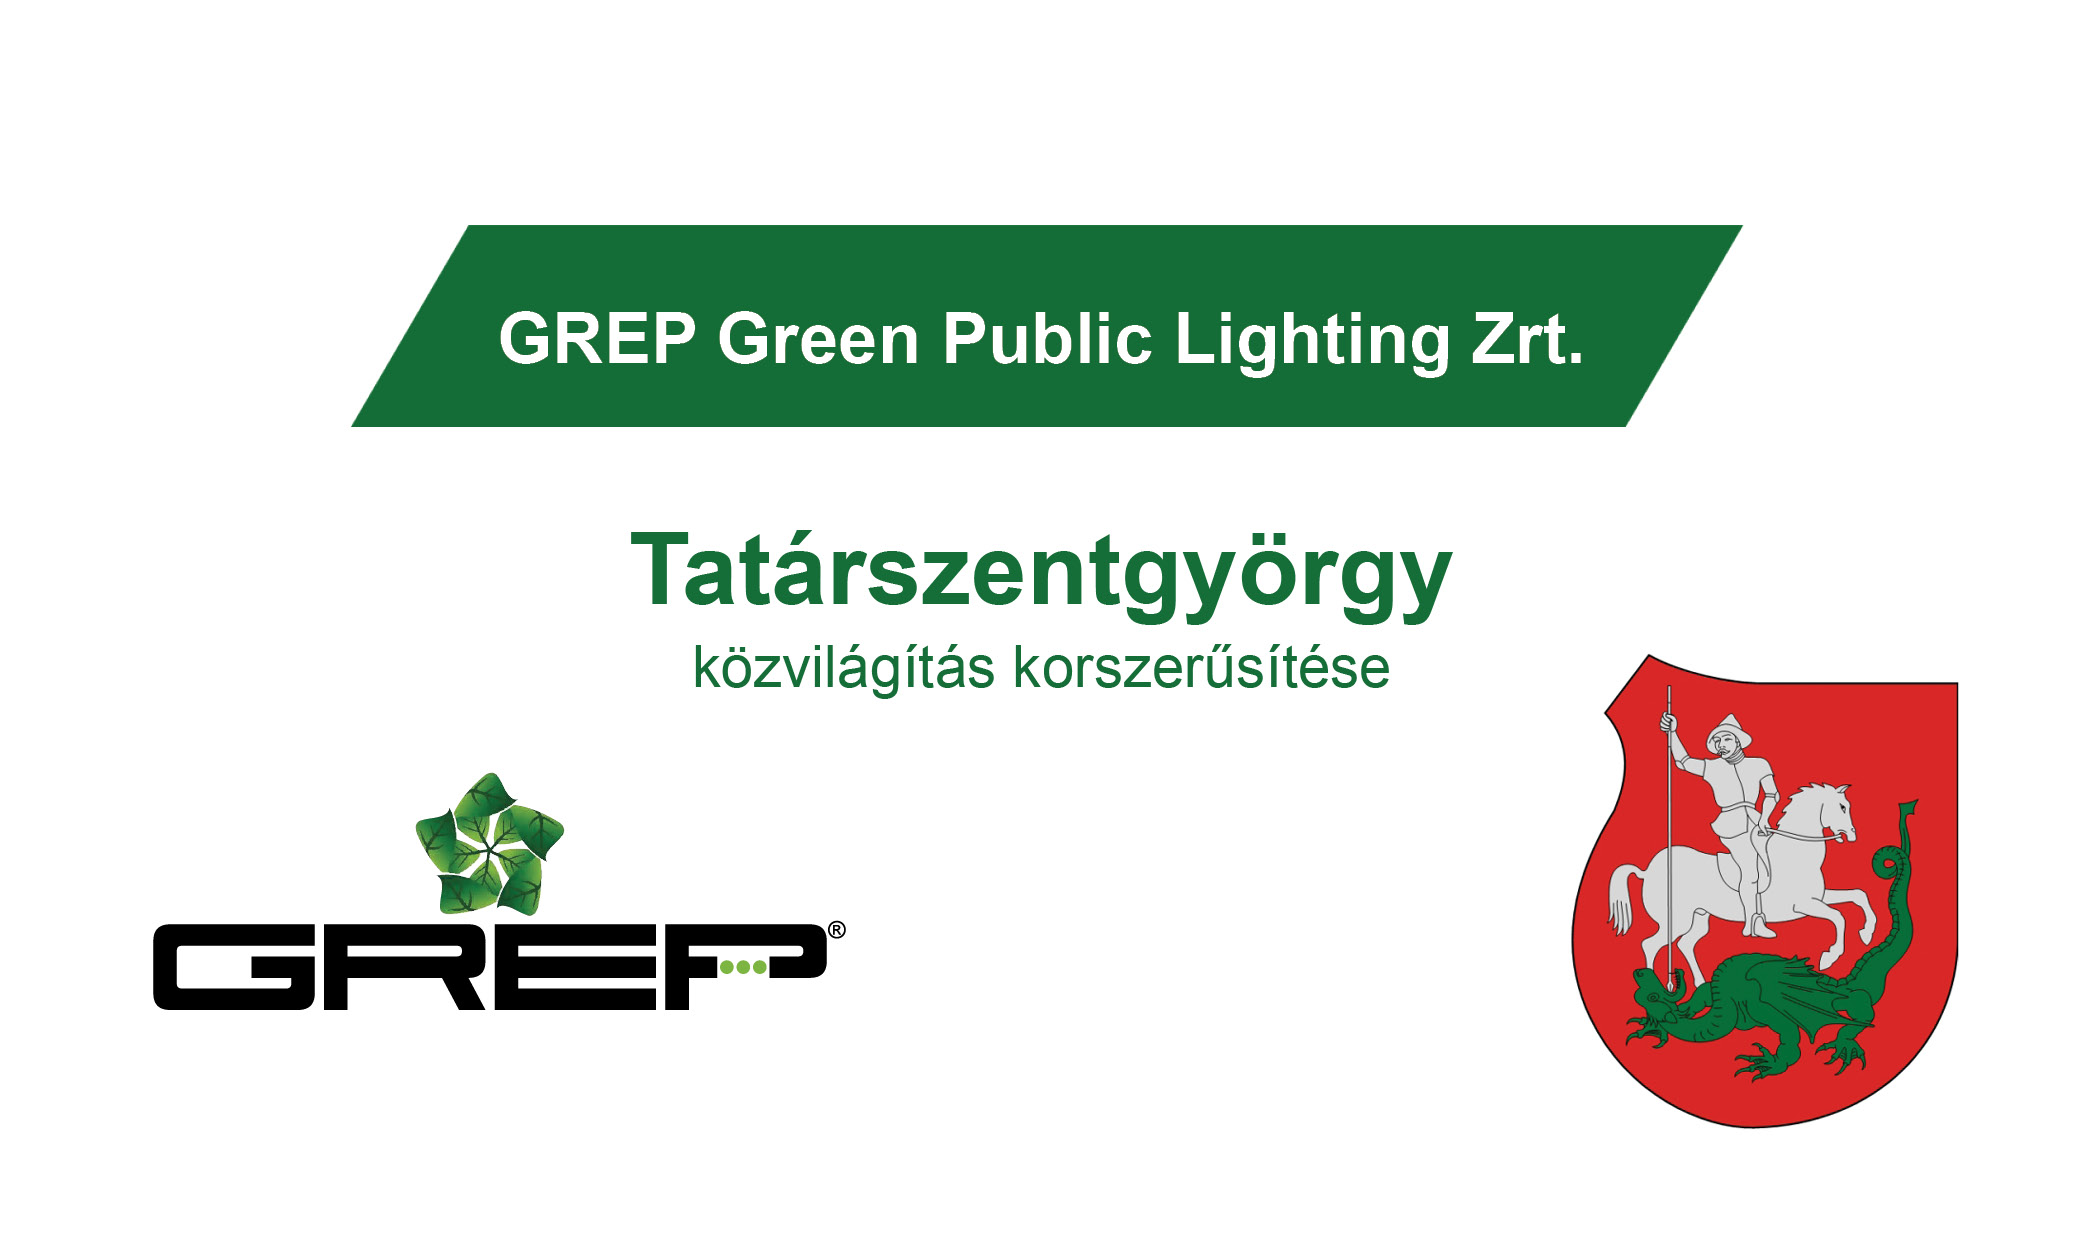 GREP Green Public Lighting Zrt. Tatárszentgyörgy közvilágítás korszerűsítése